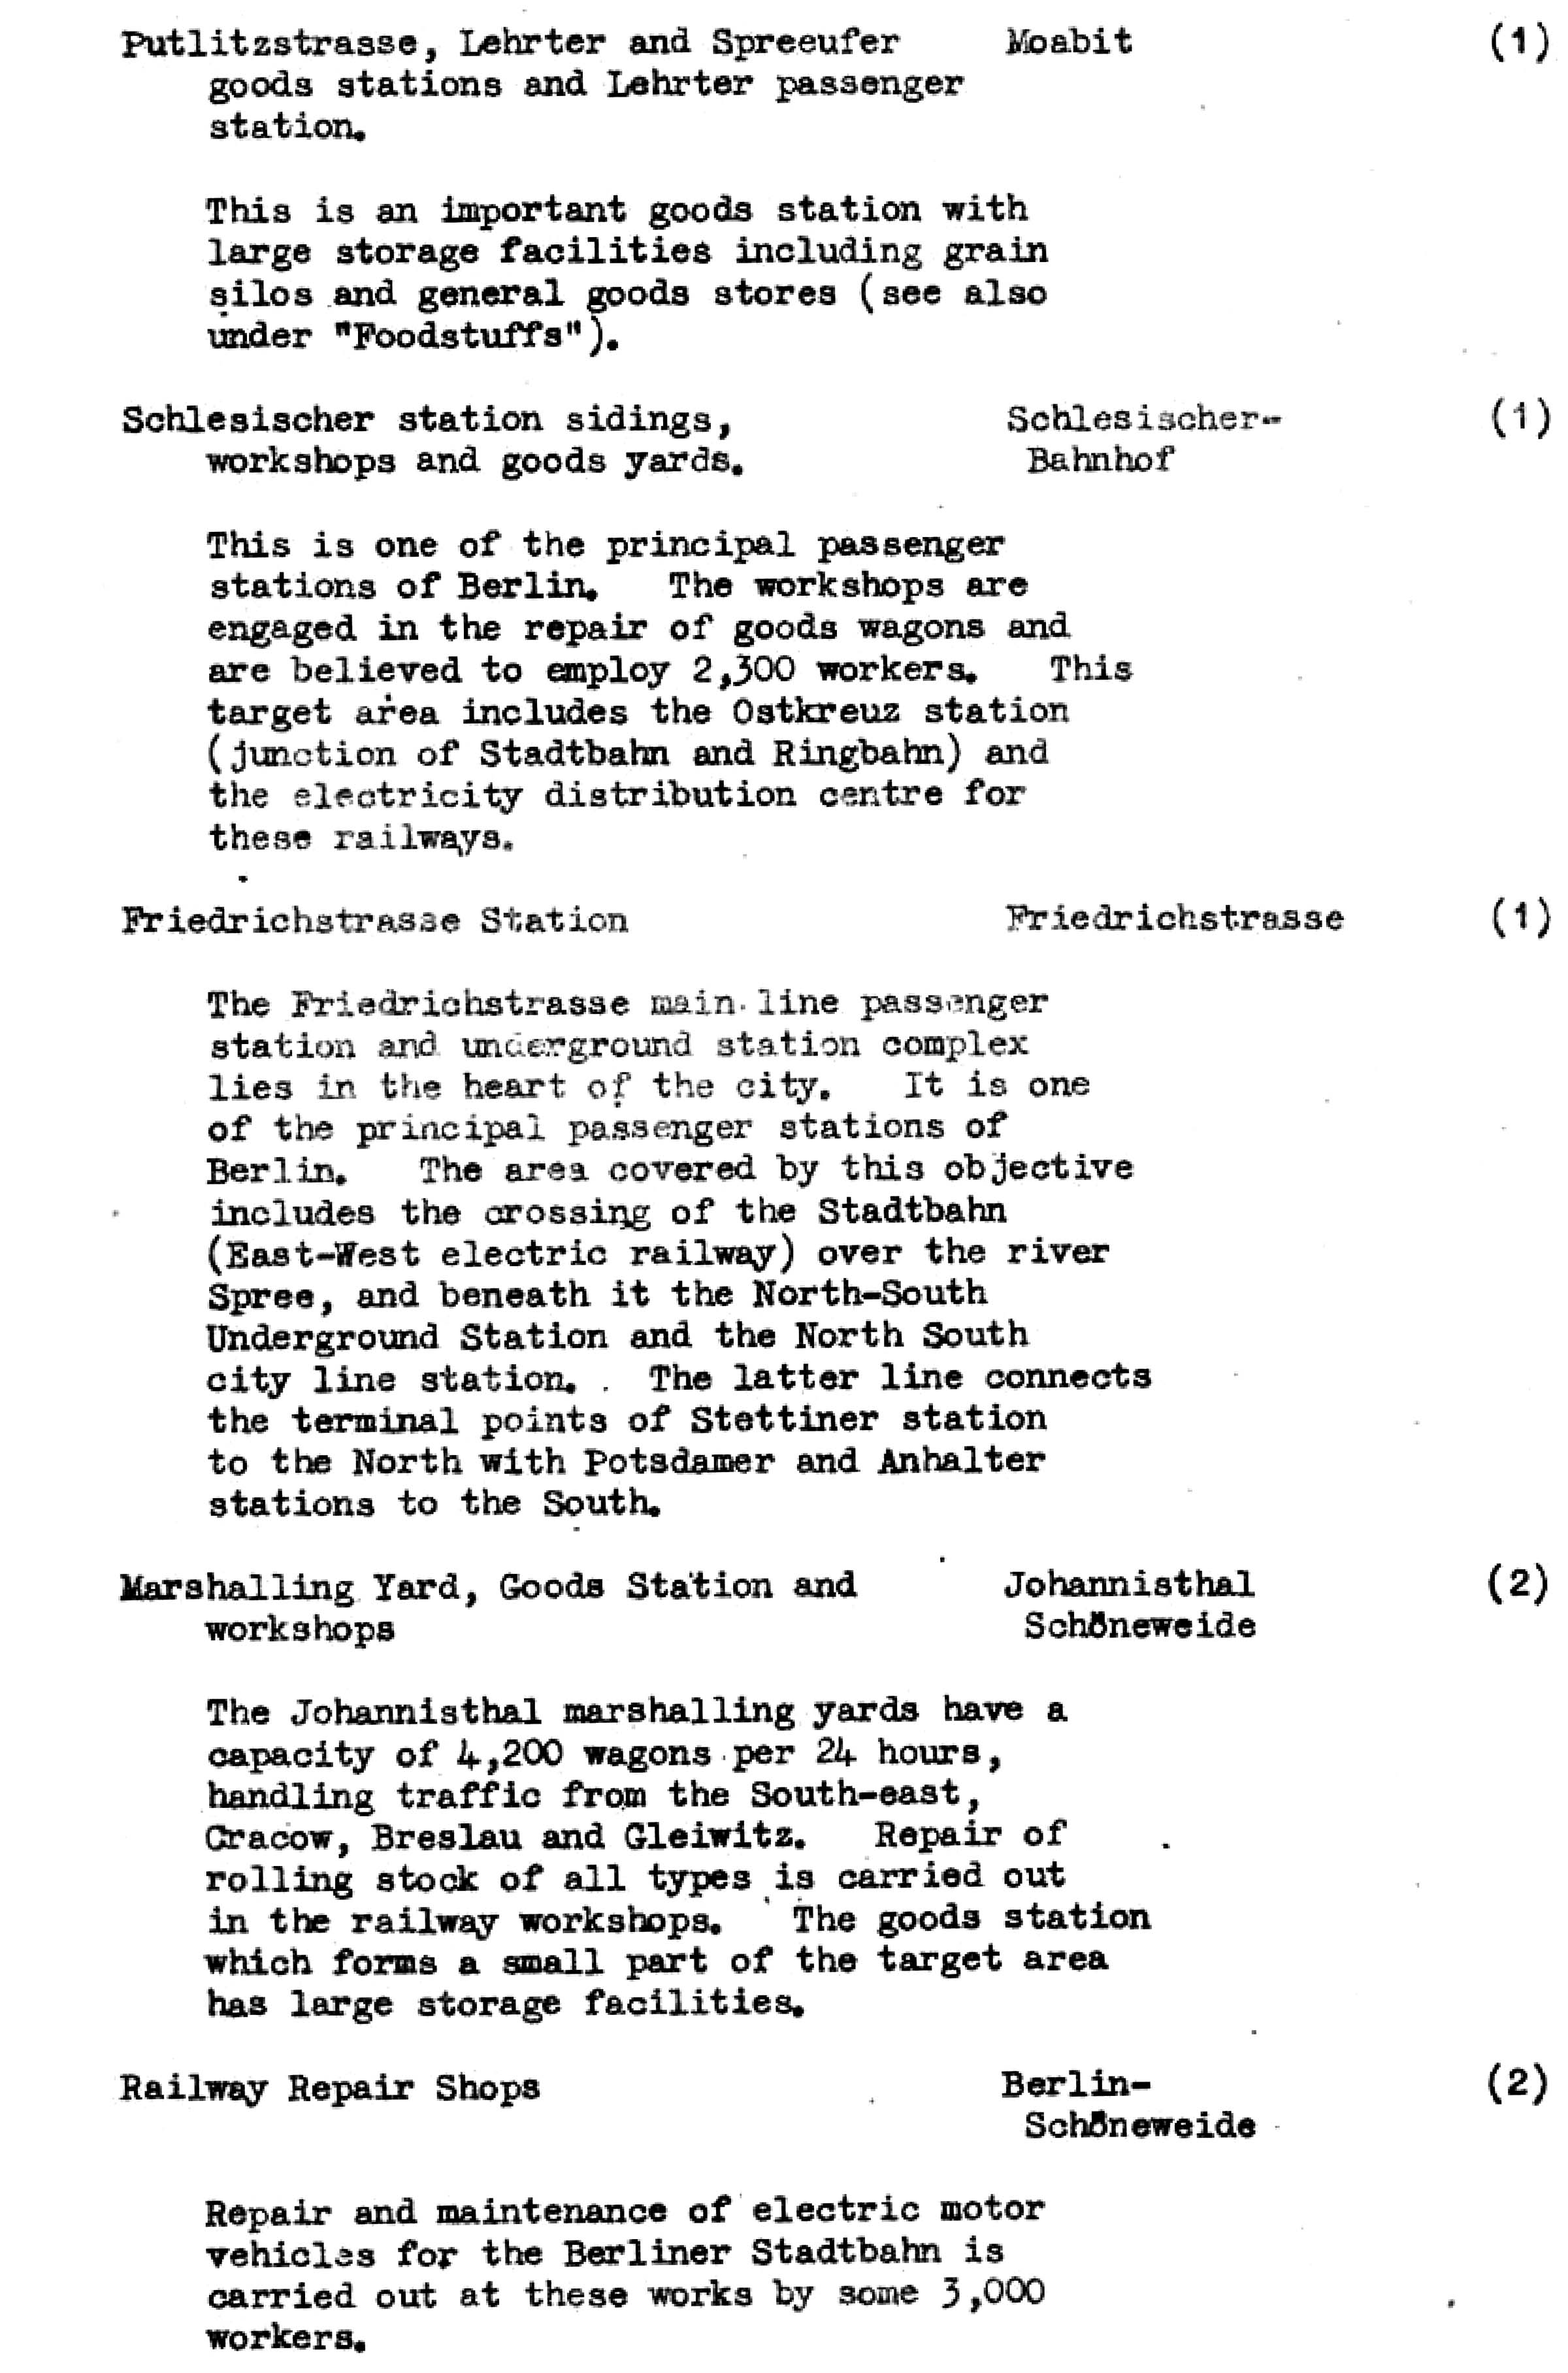 Die Ziele der alliierten Luftangriffe in Berlin im Zeiten Weltkrieg im Bomber's Baedeker - Originaldokument Seite 33b